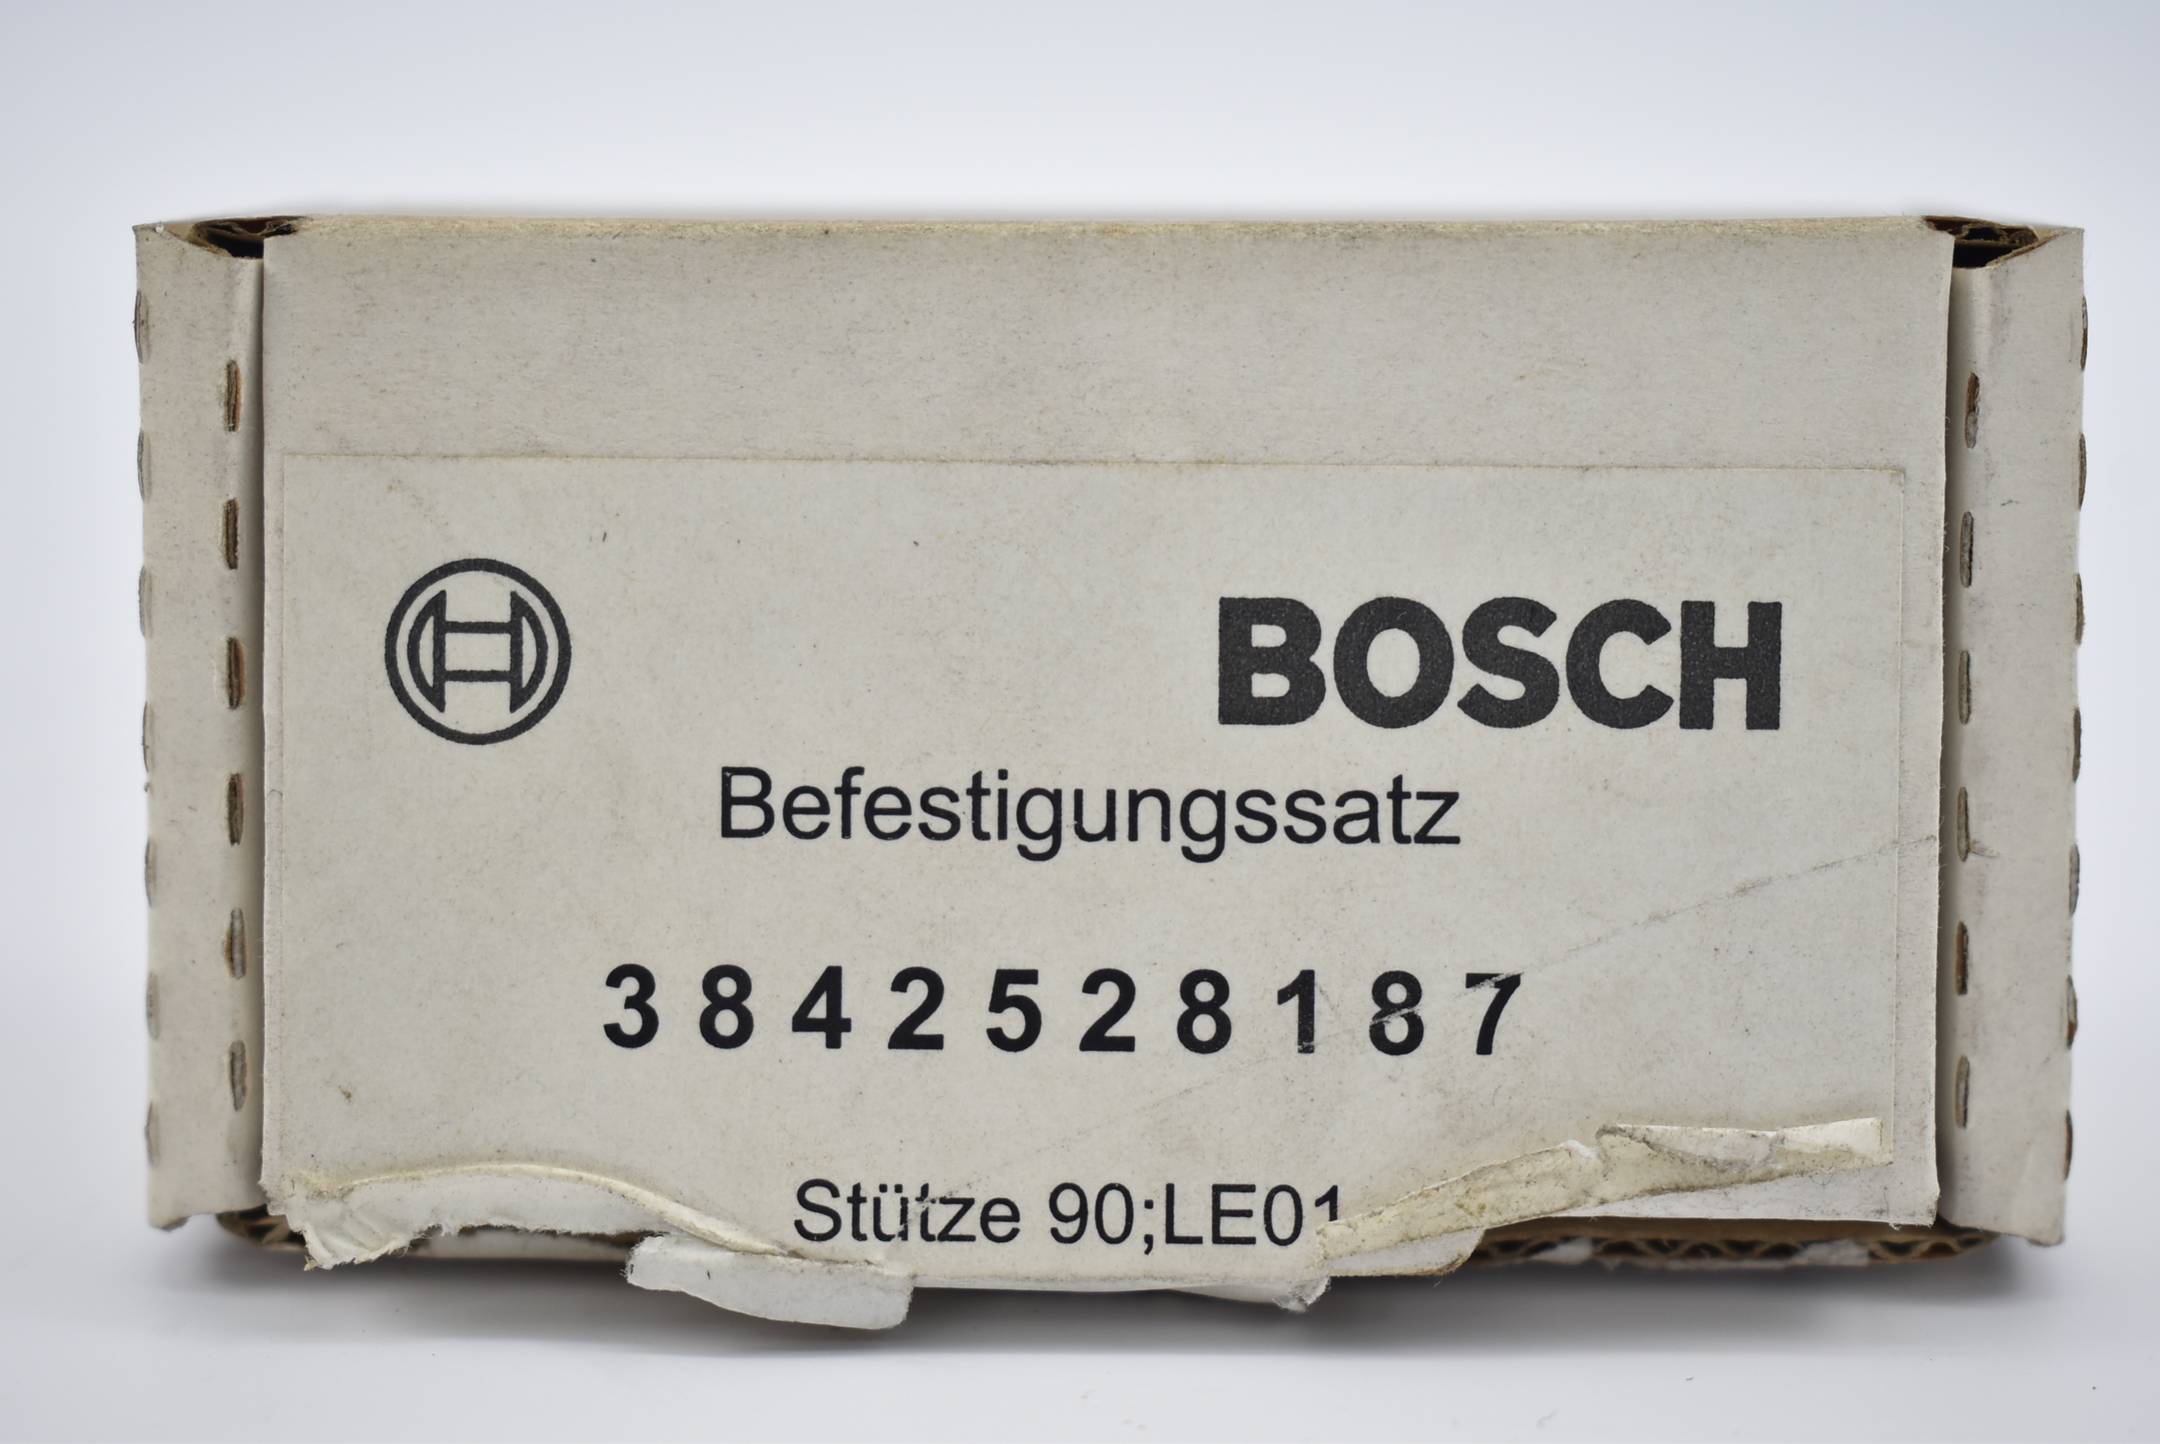 Bosch Befestigungssatz Stütze 90 LE01 ( 3842528187 )